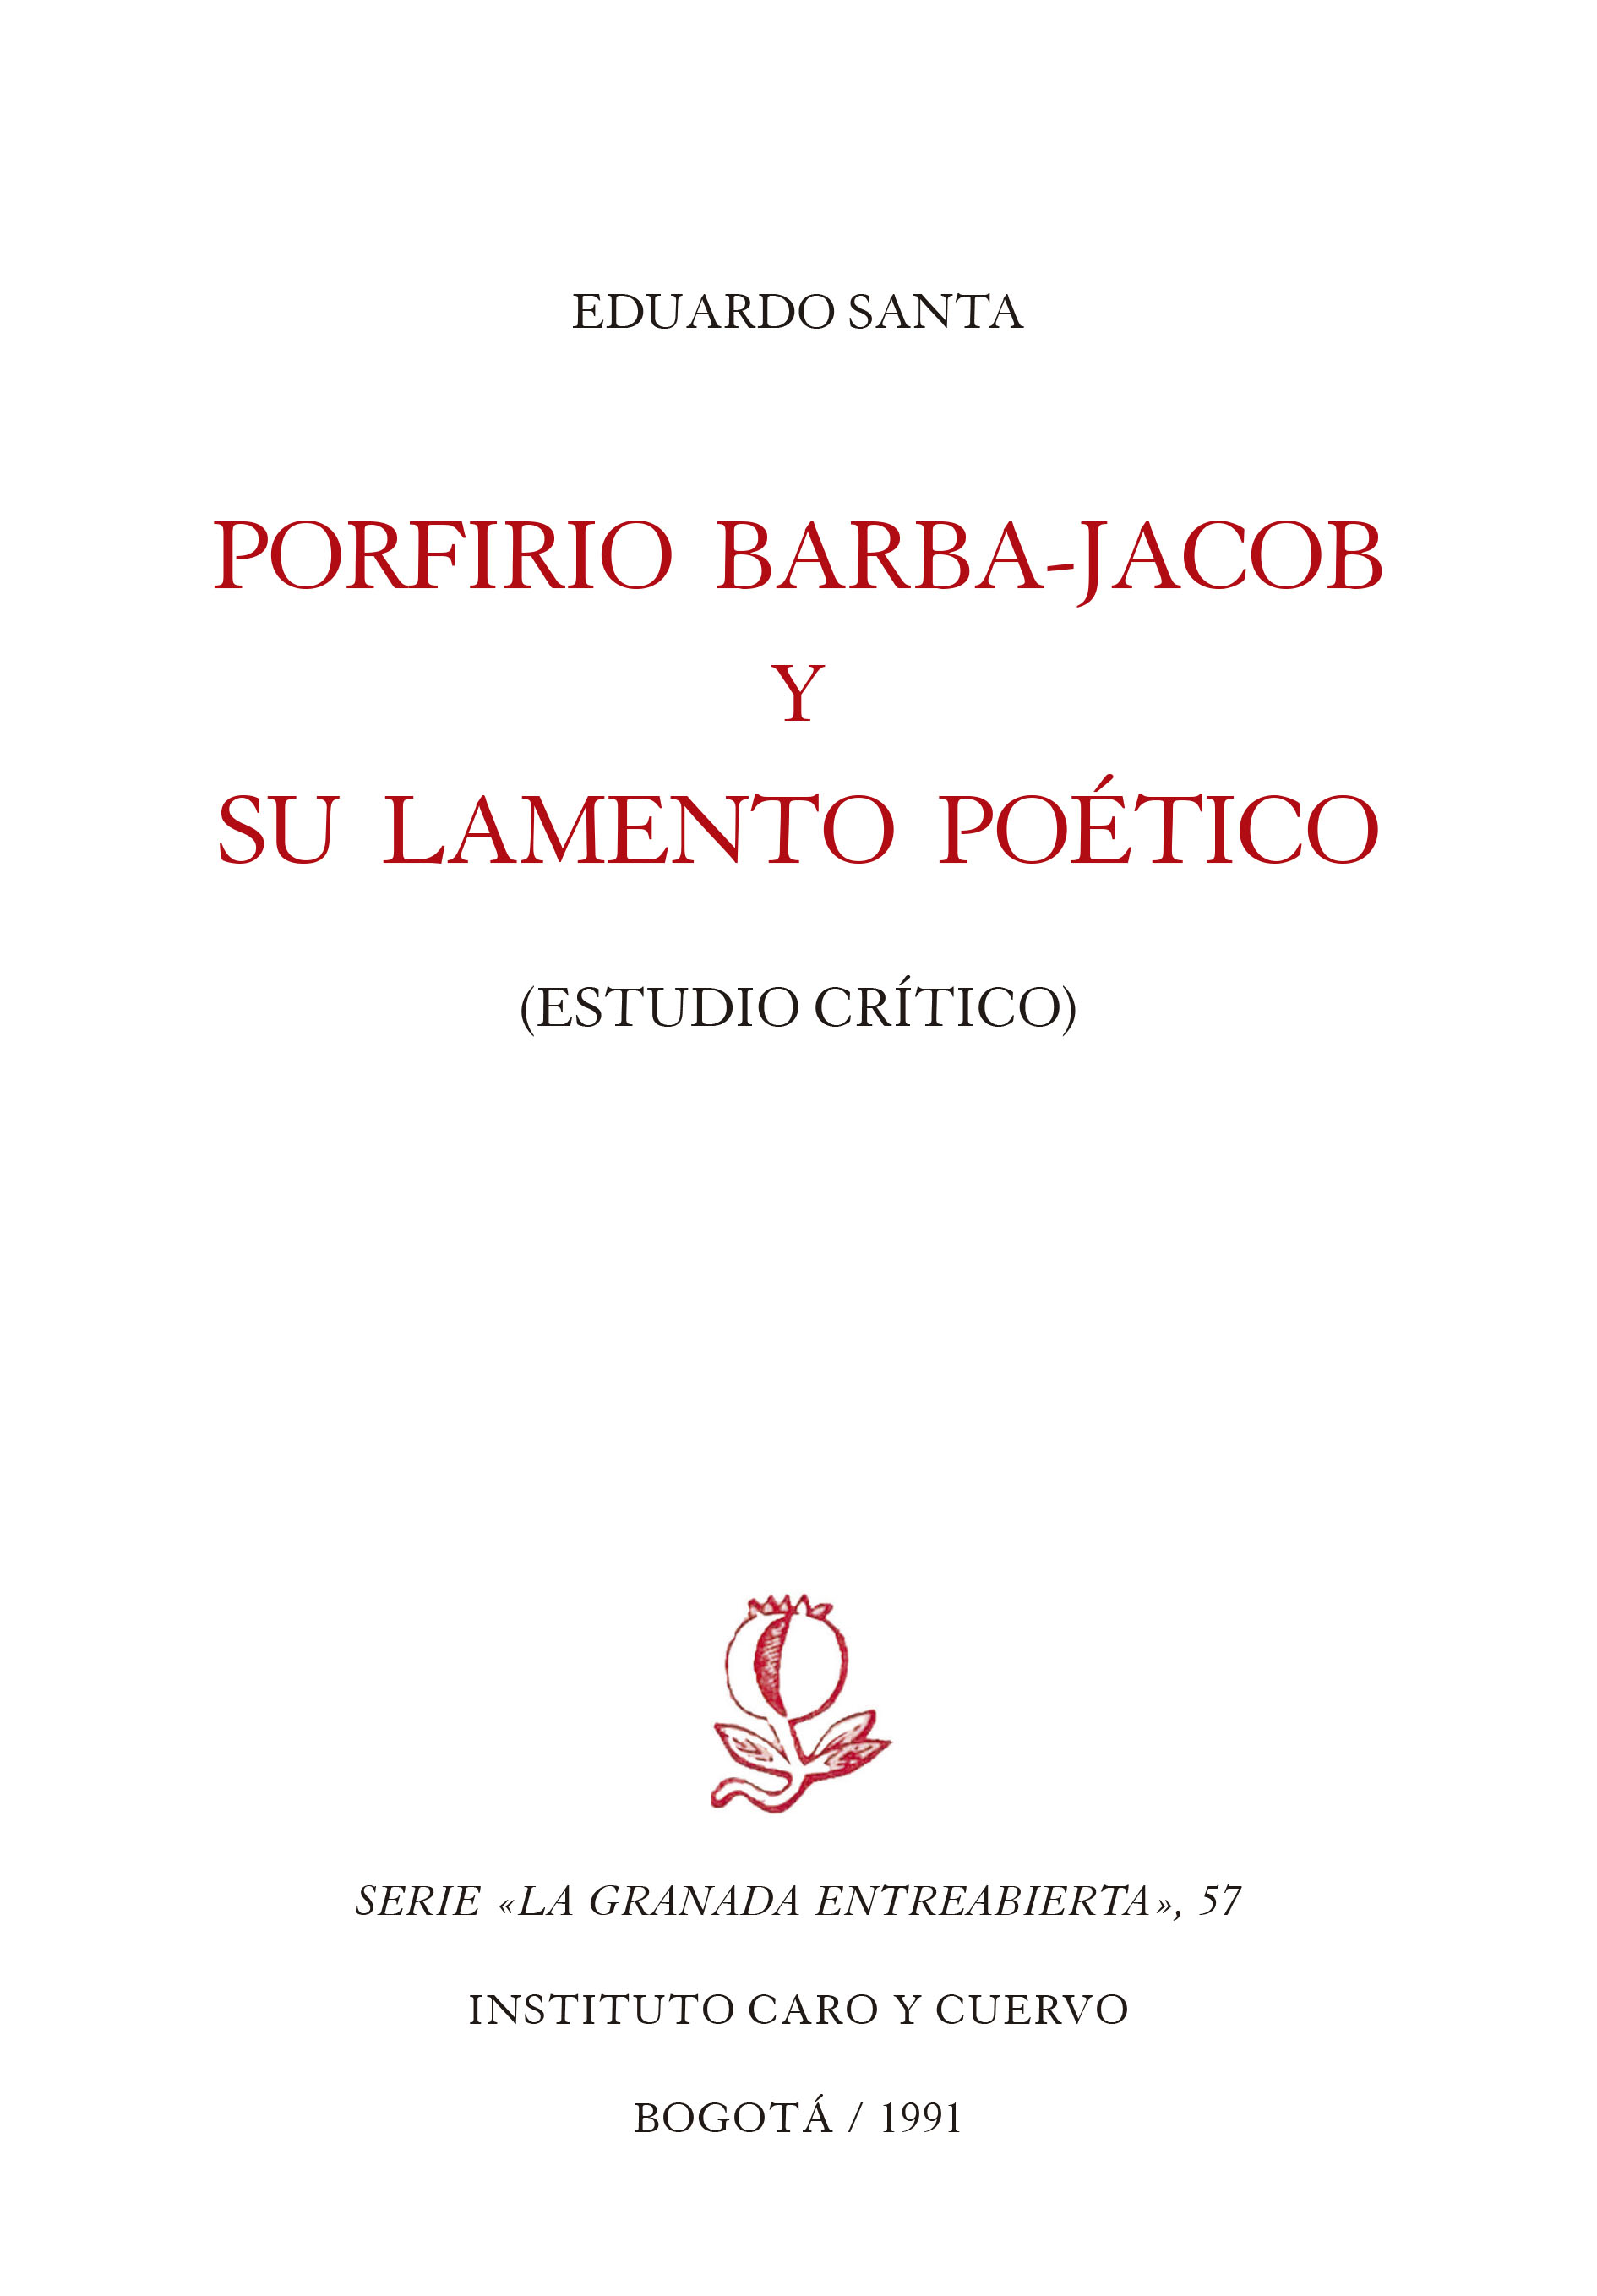 Porfirio Barba-Jacob y su lamento poético. Estudio crítico